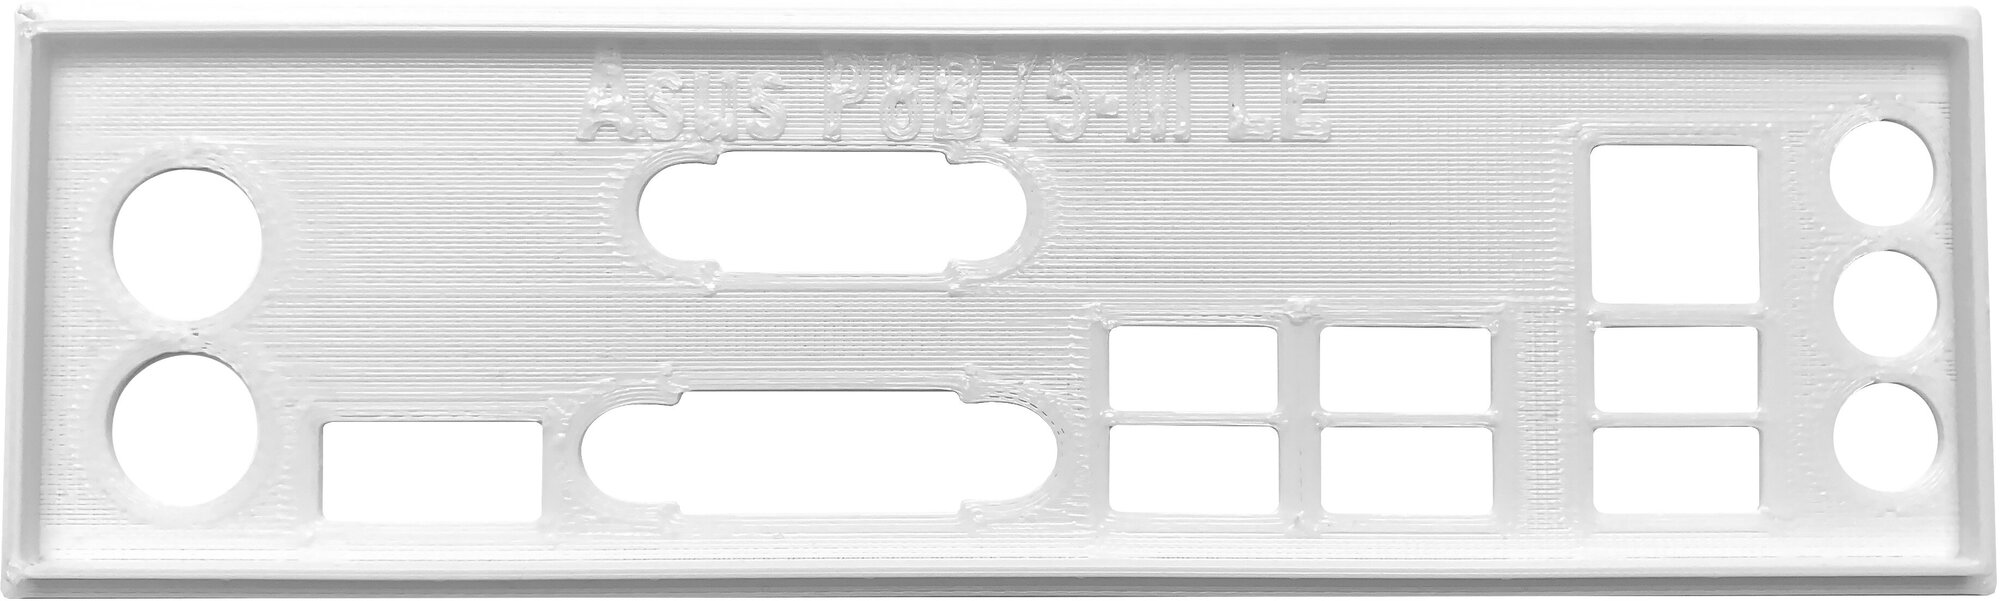 Заглушка для компьютерного корпуса к материнской плате Asus P8B75-M LE white